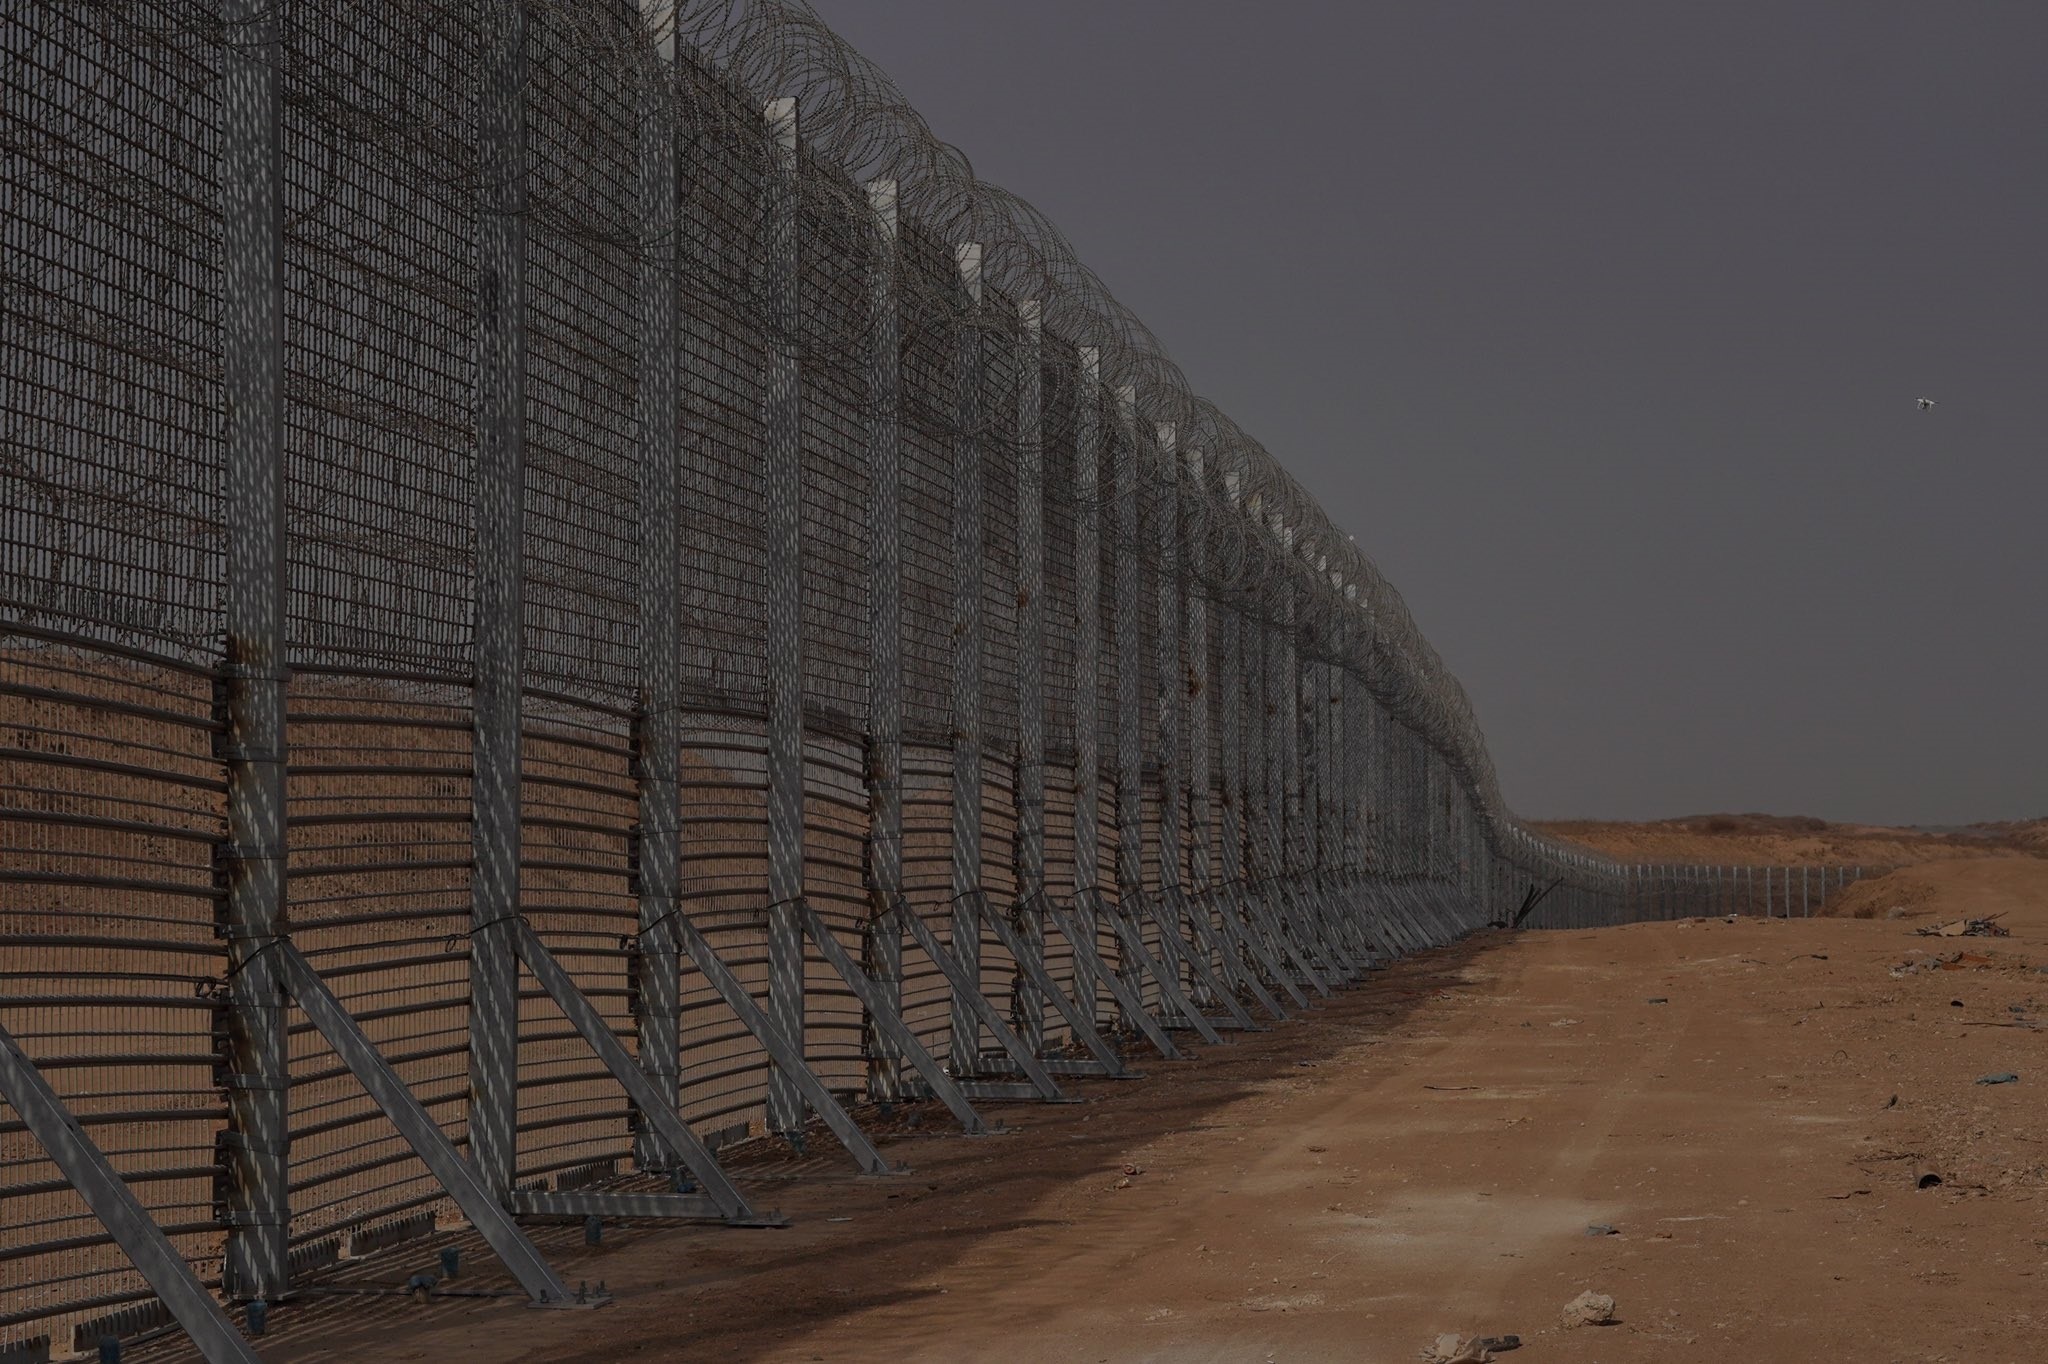 Barrera subterránea fronteriza con la Franja de Gaza. Israel ha completado la construcción de un muro fronterizo subterráneo de 65 kilómetros a lo largo de la Franja de Gaza para eliminar la posibilidad de ataque a través de túneles por parte de Hamás.
TWITTER @IDFONLINE
